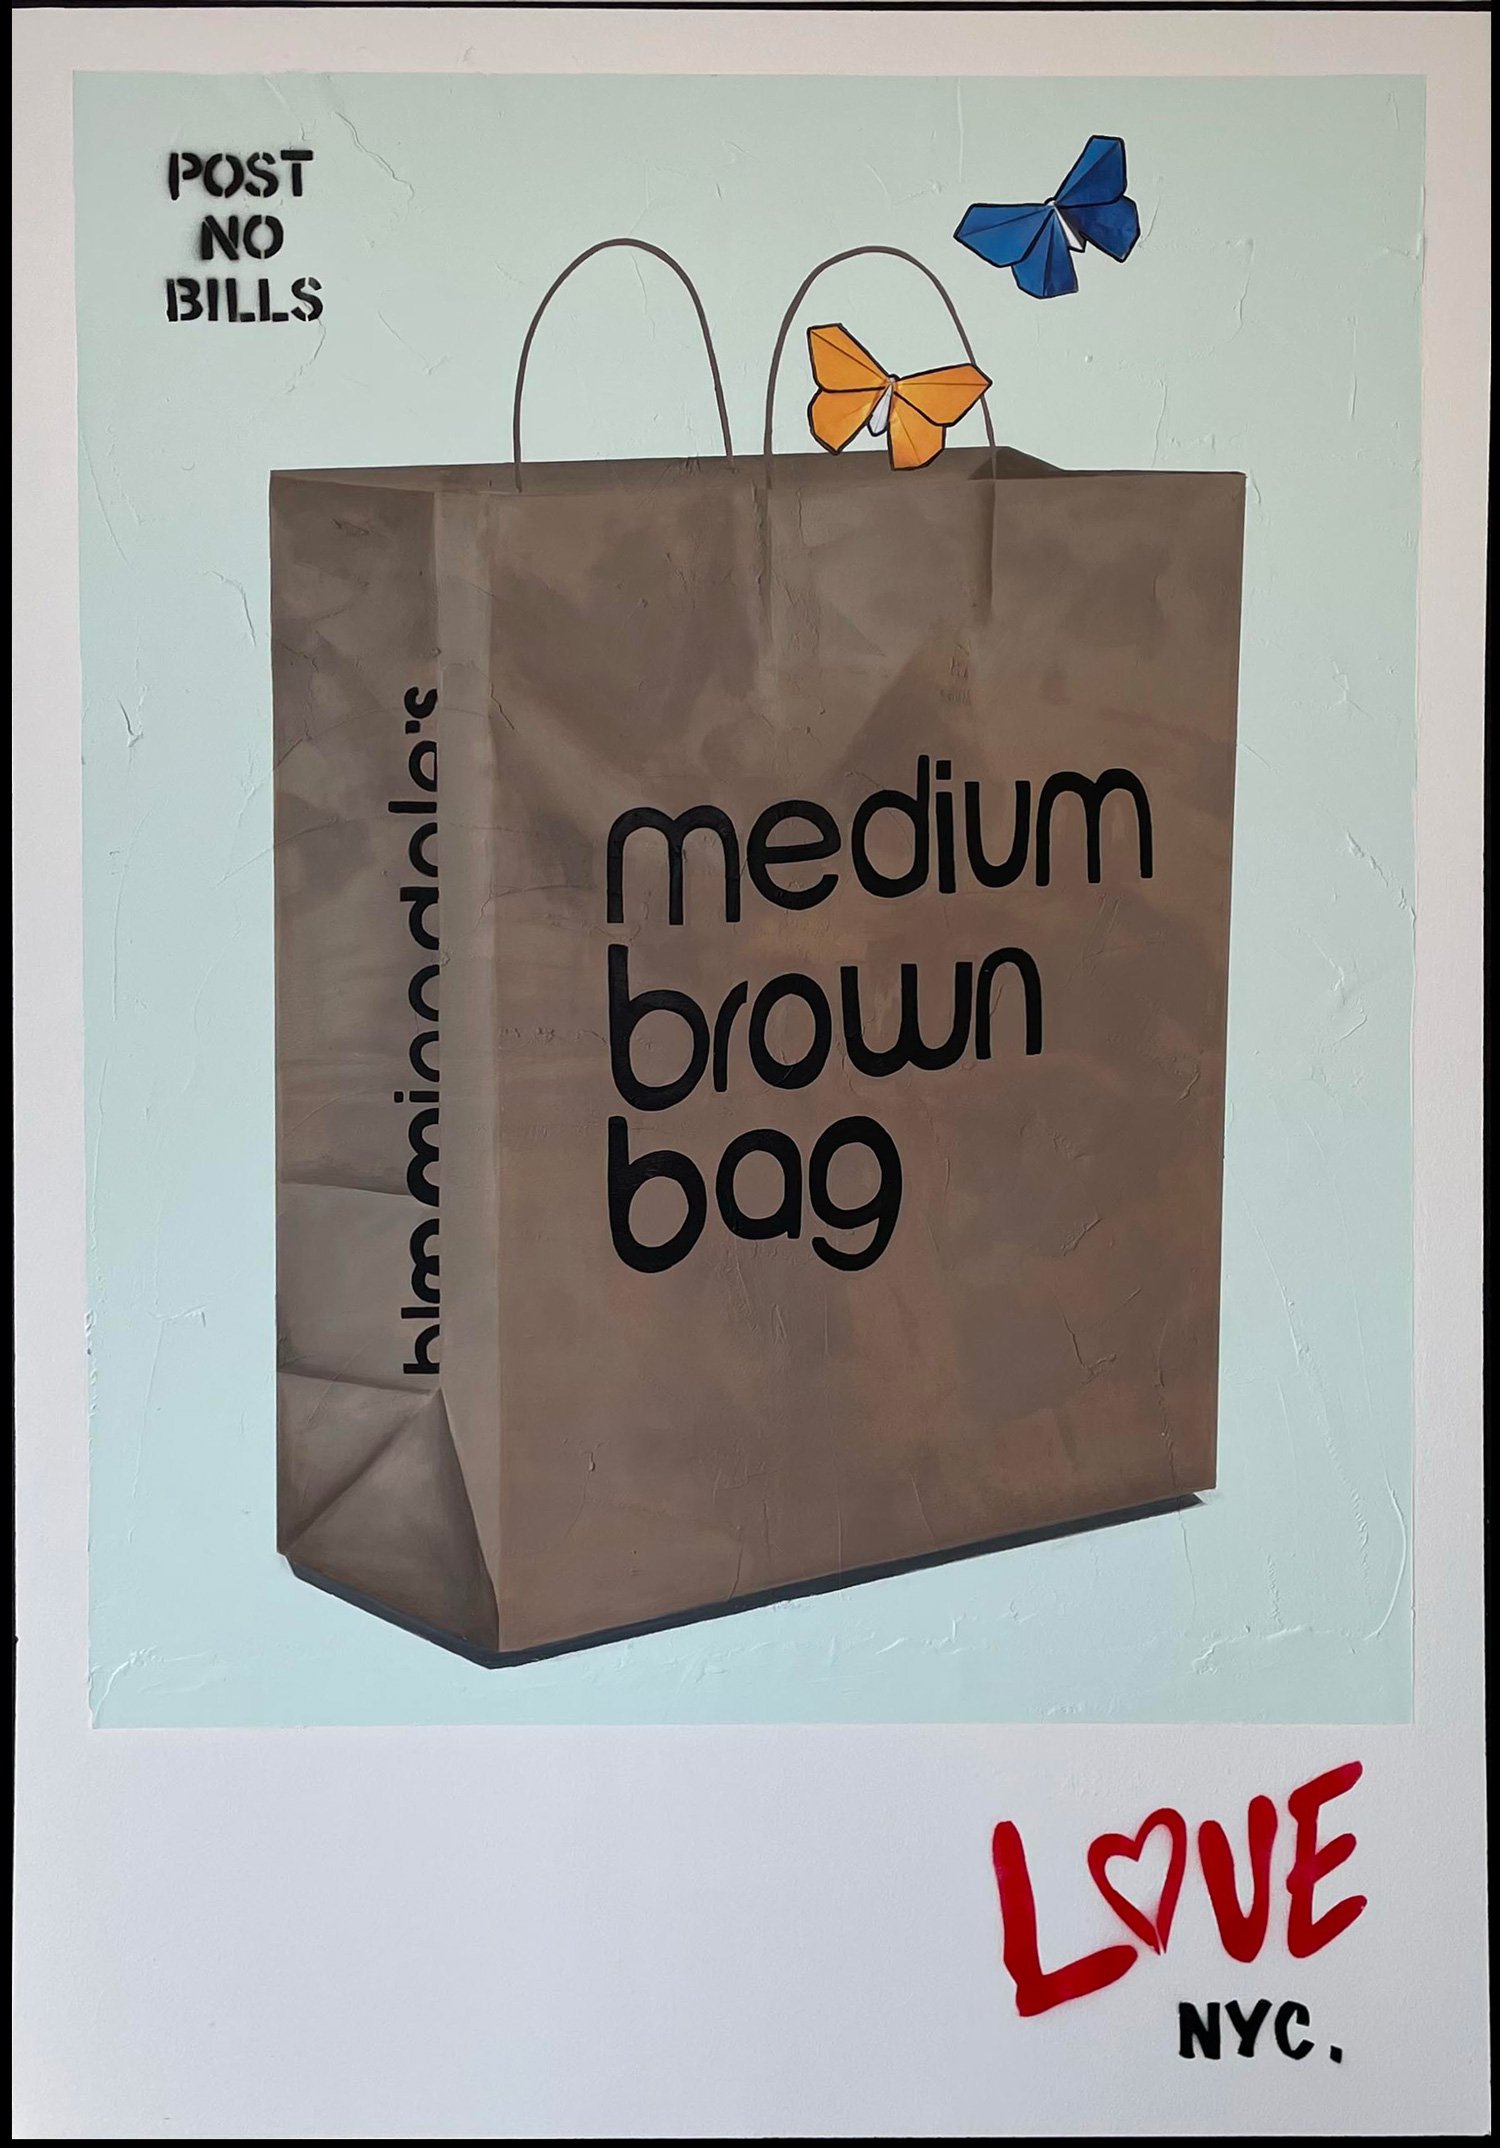 The medium brown bag